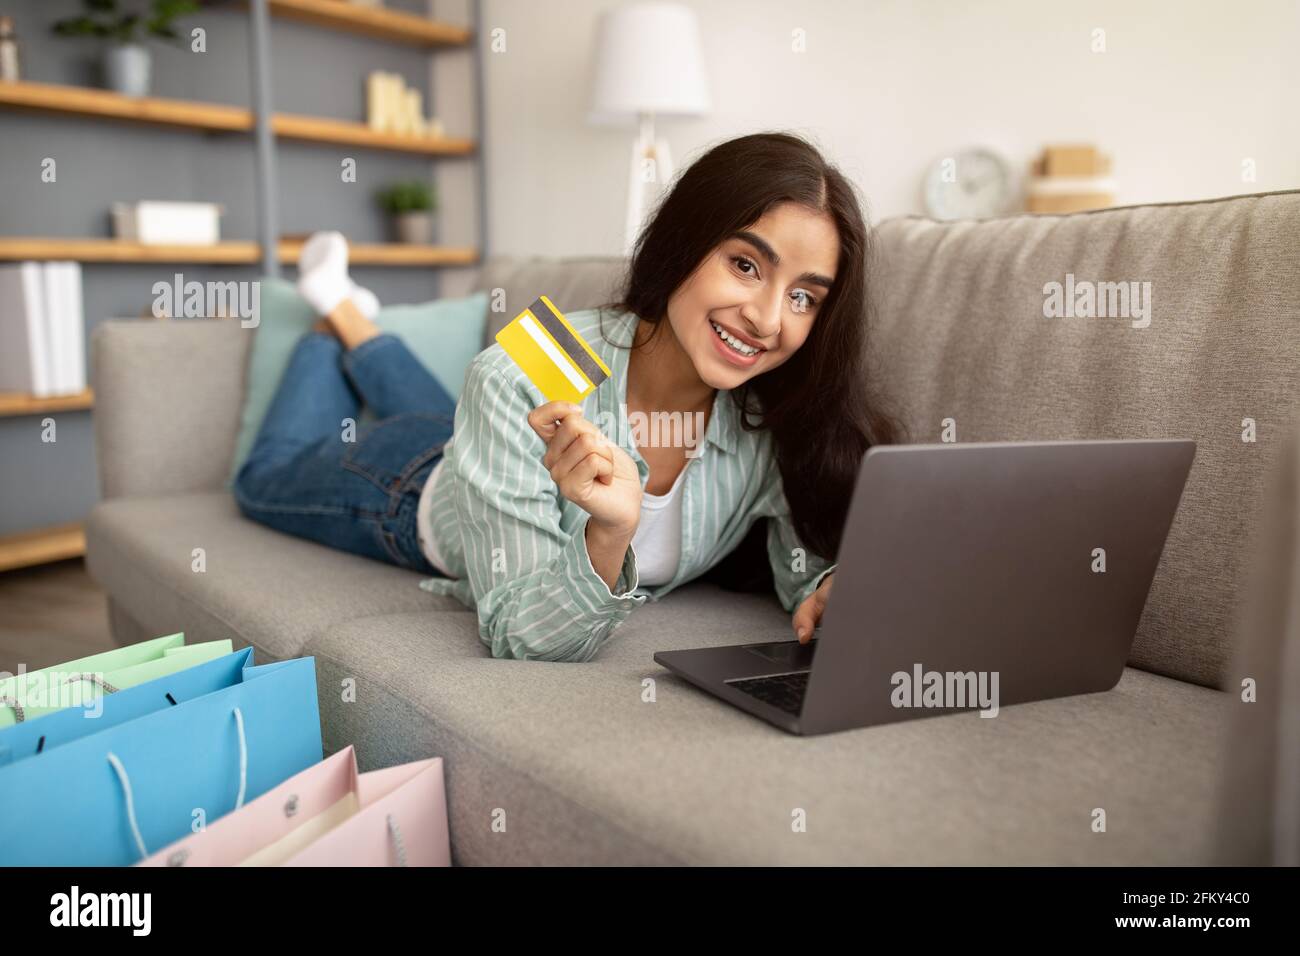 Eine wunderschöne indische Dame, die online einkaufen kann, auf dem Sofa mit Laptop-pc und Kreditkarte liegt, in der Nähe stehen Geschenktüten Stockfoto